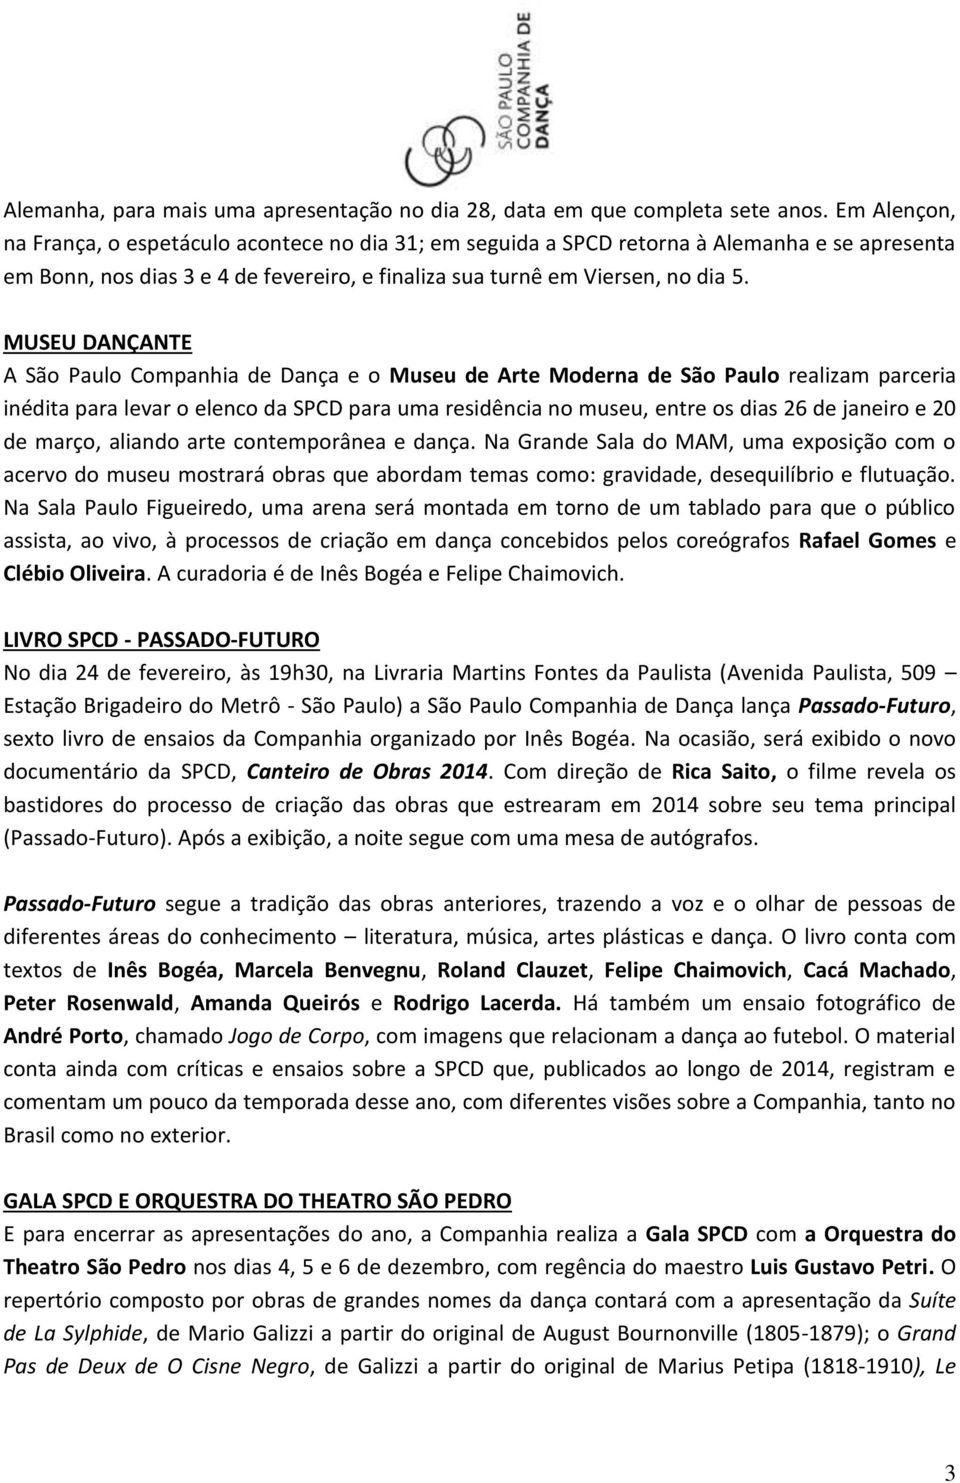 MUSEU DANÇANTE A São Paulo Companhia de Dança e o Museu de Arte Moderna de São Paulo realizam parceria inédita para levar o elenco da SPCD para uma residência no museu, entre os dias 26 de janeiro e